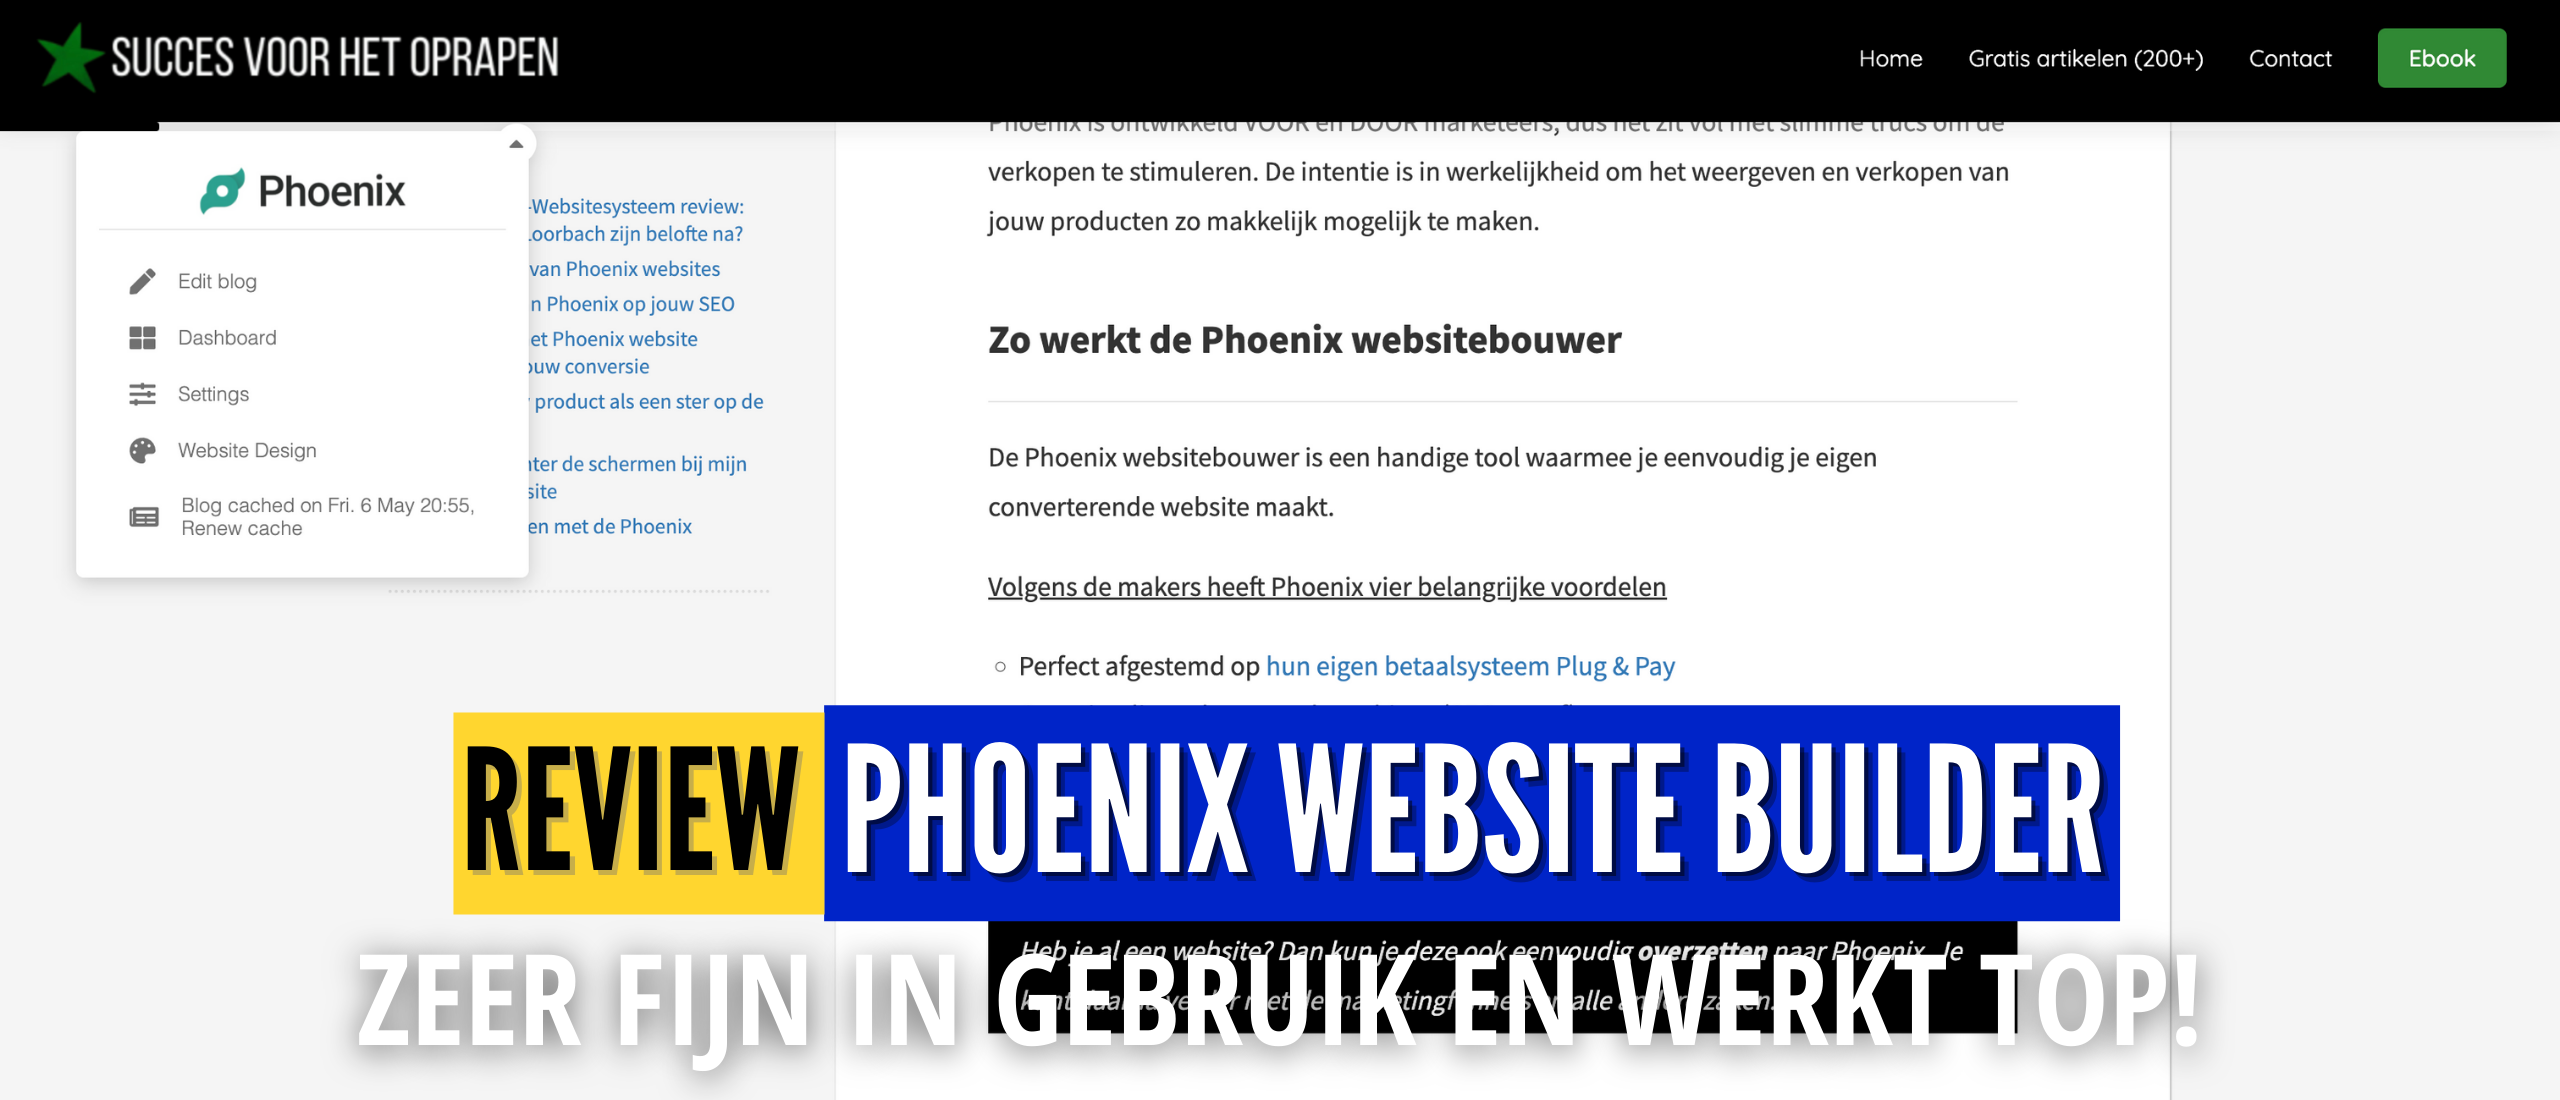 Phoenix-site Review (IMU) Top of Te Duur? Mijn Ervaringen